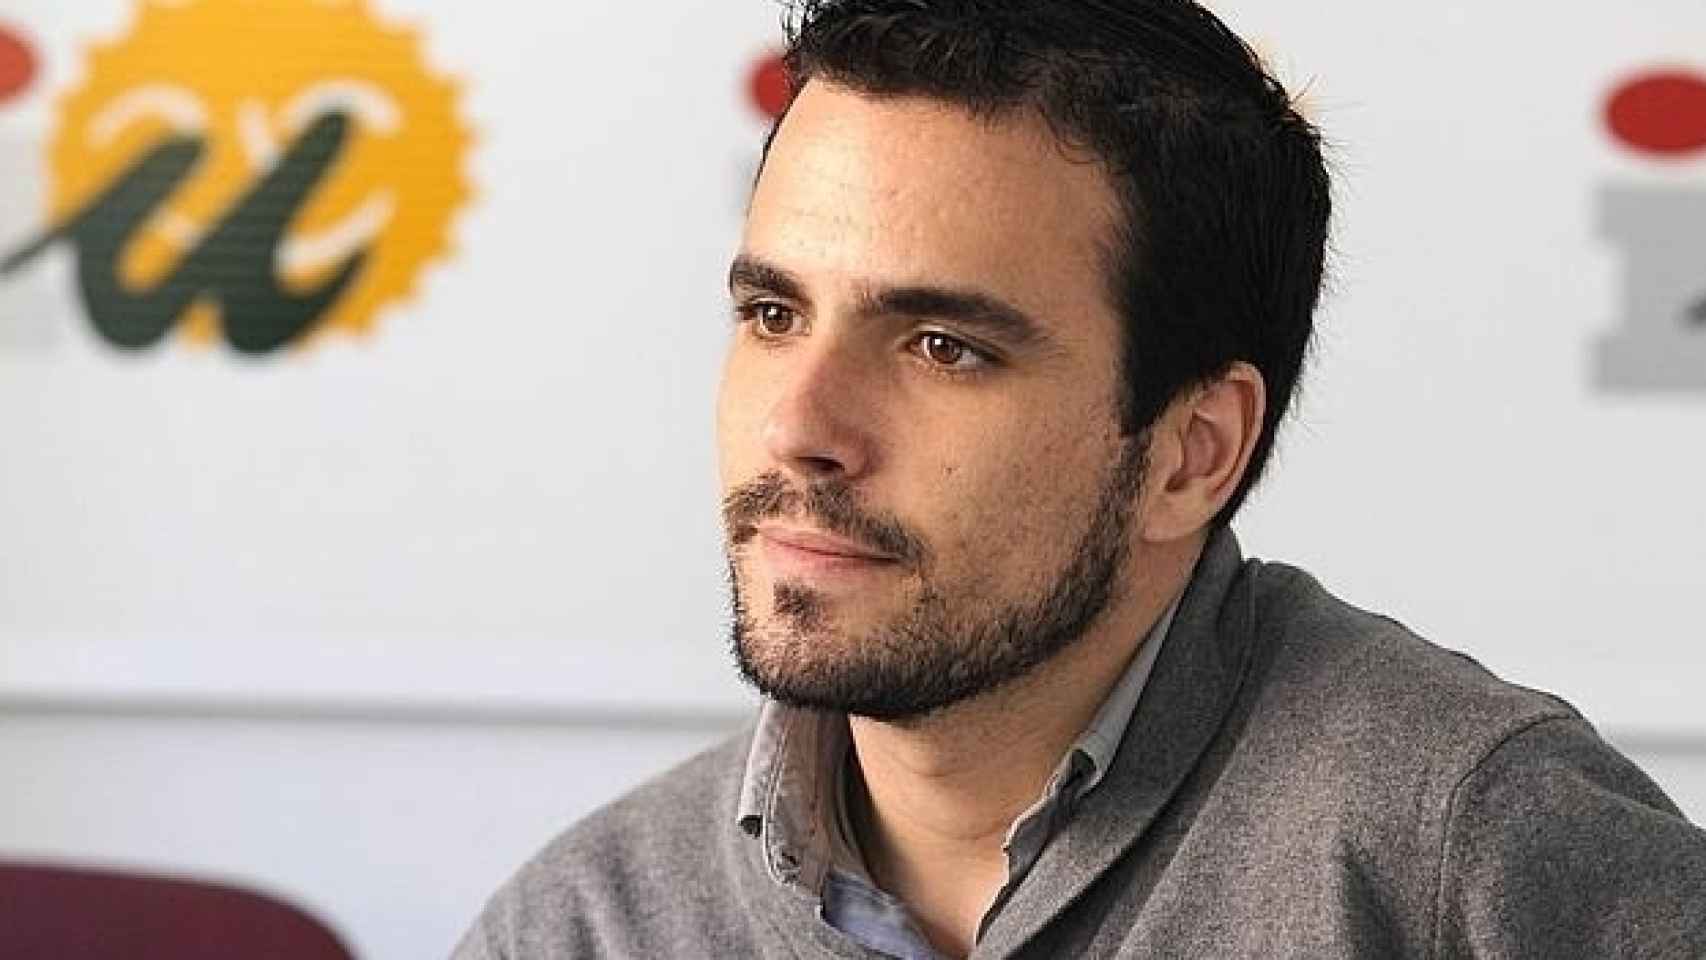 La presentadora confesó haber votado a Alberto Garzón